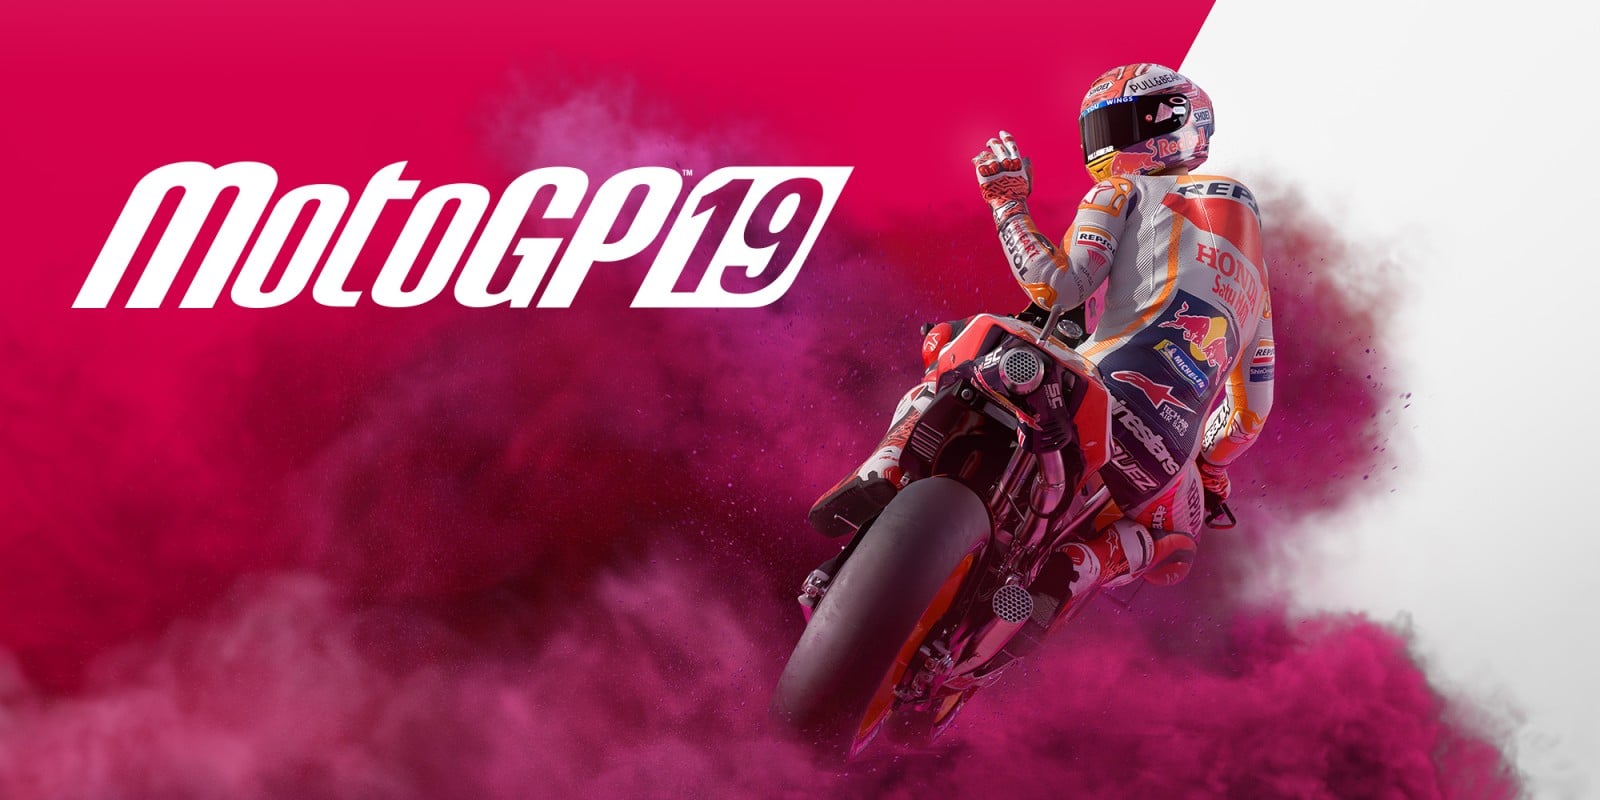 MotoGP 19 PC Full Version Free Download